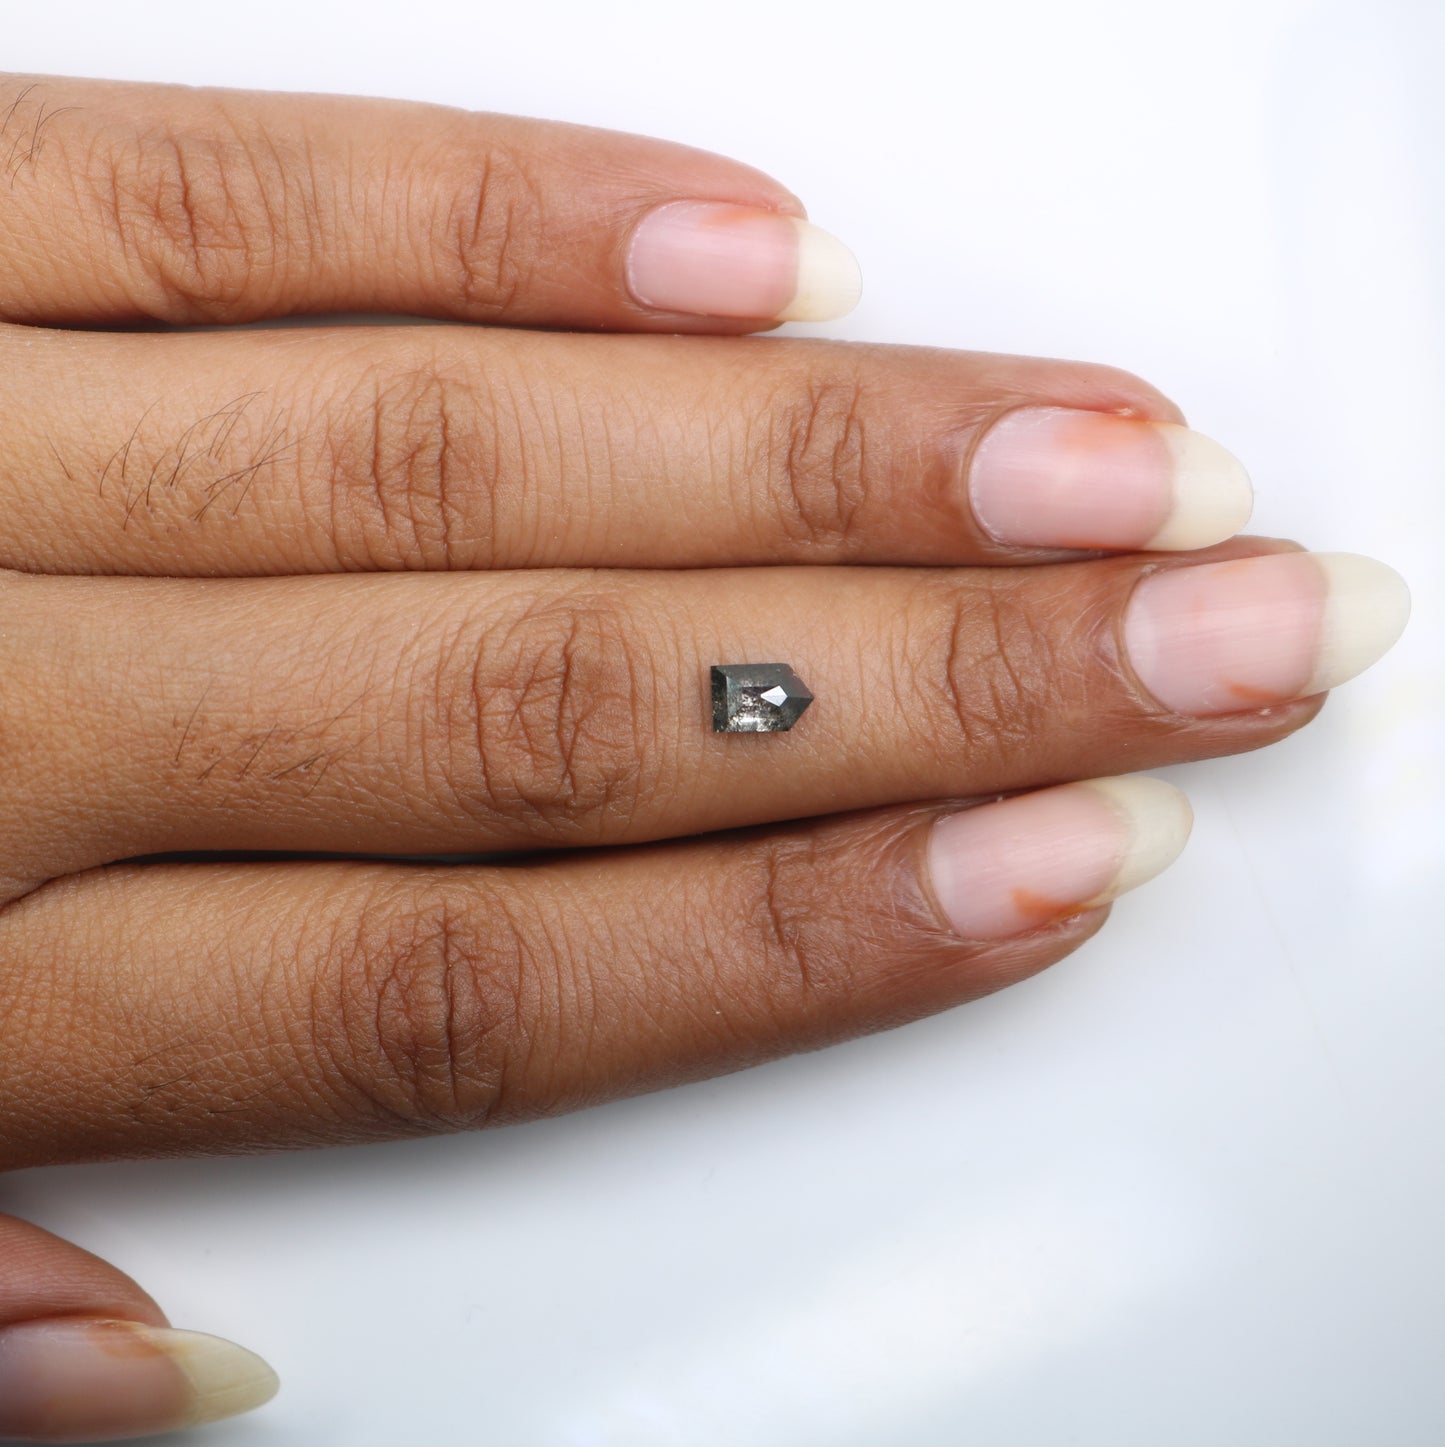 0.79 CT Salt And Pepper Bullet Shape Diamond For Engagement Ring